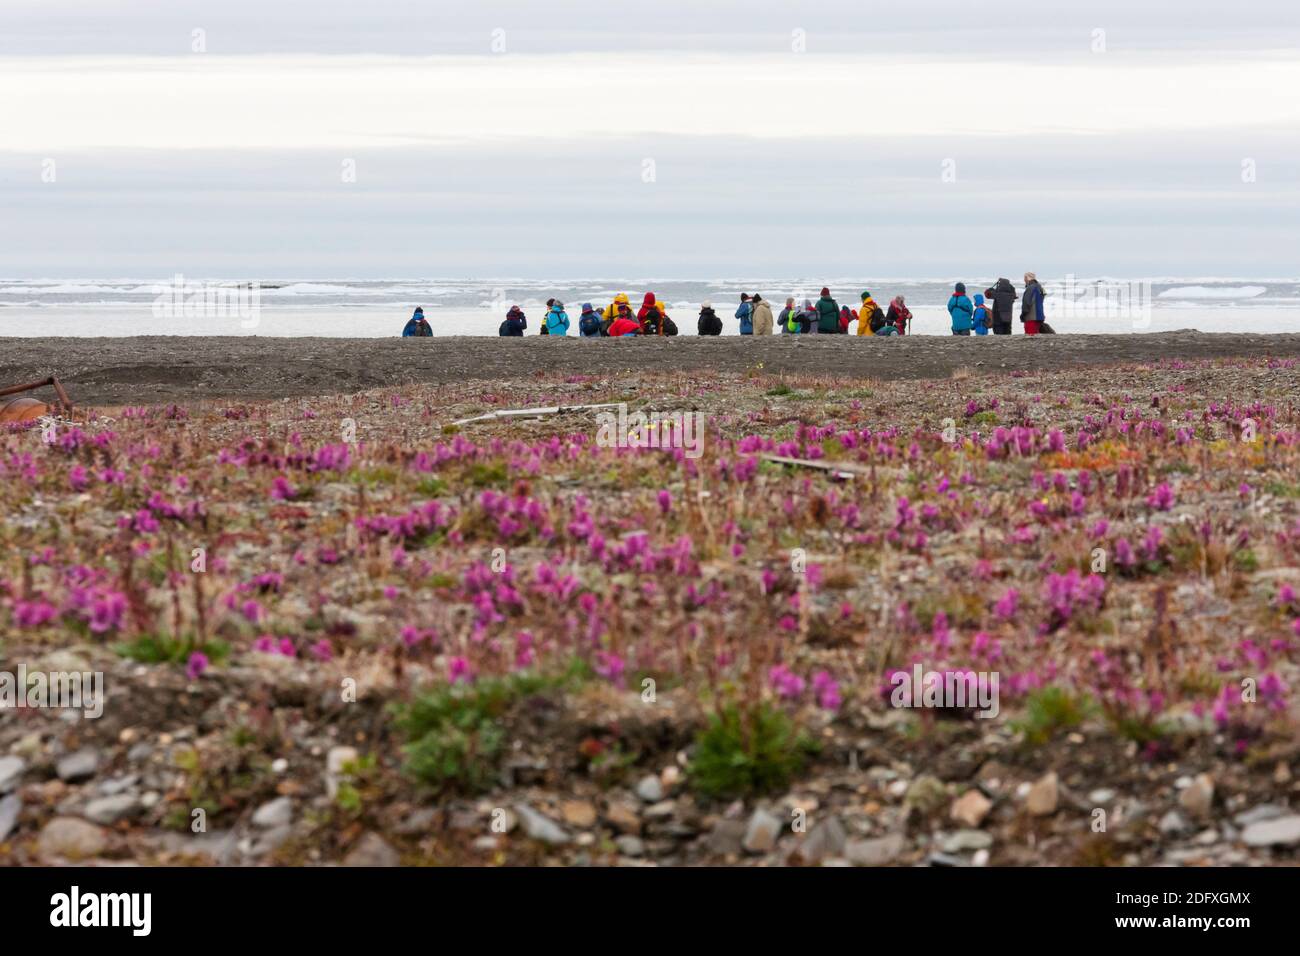 Touristes sur la plage de la mer de Chukchi sur l'île de Wrangel, Russie extrême-Orient Banque D'Images